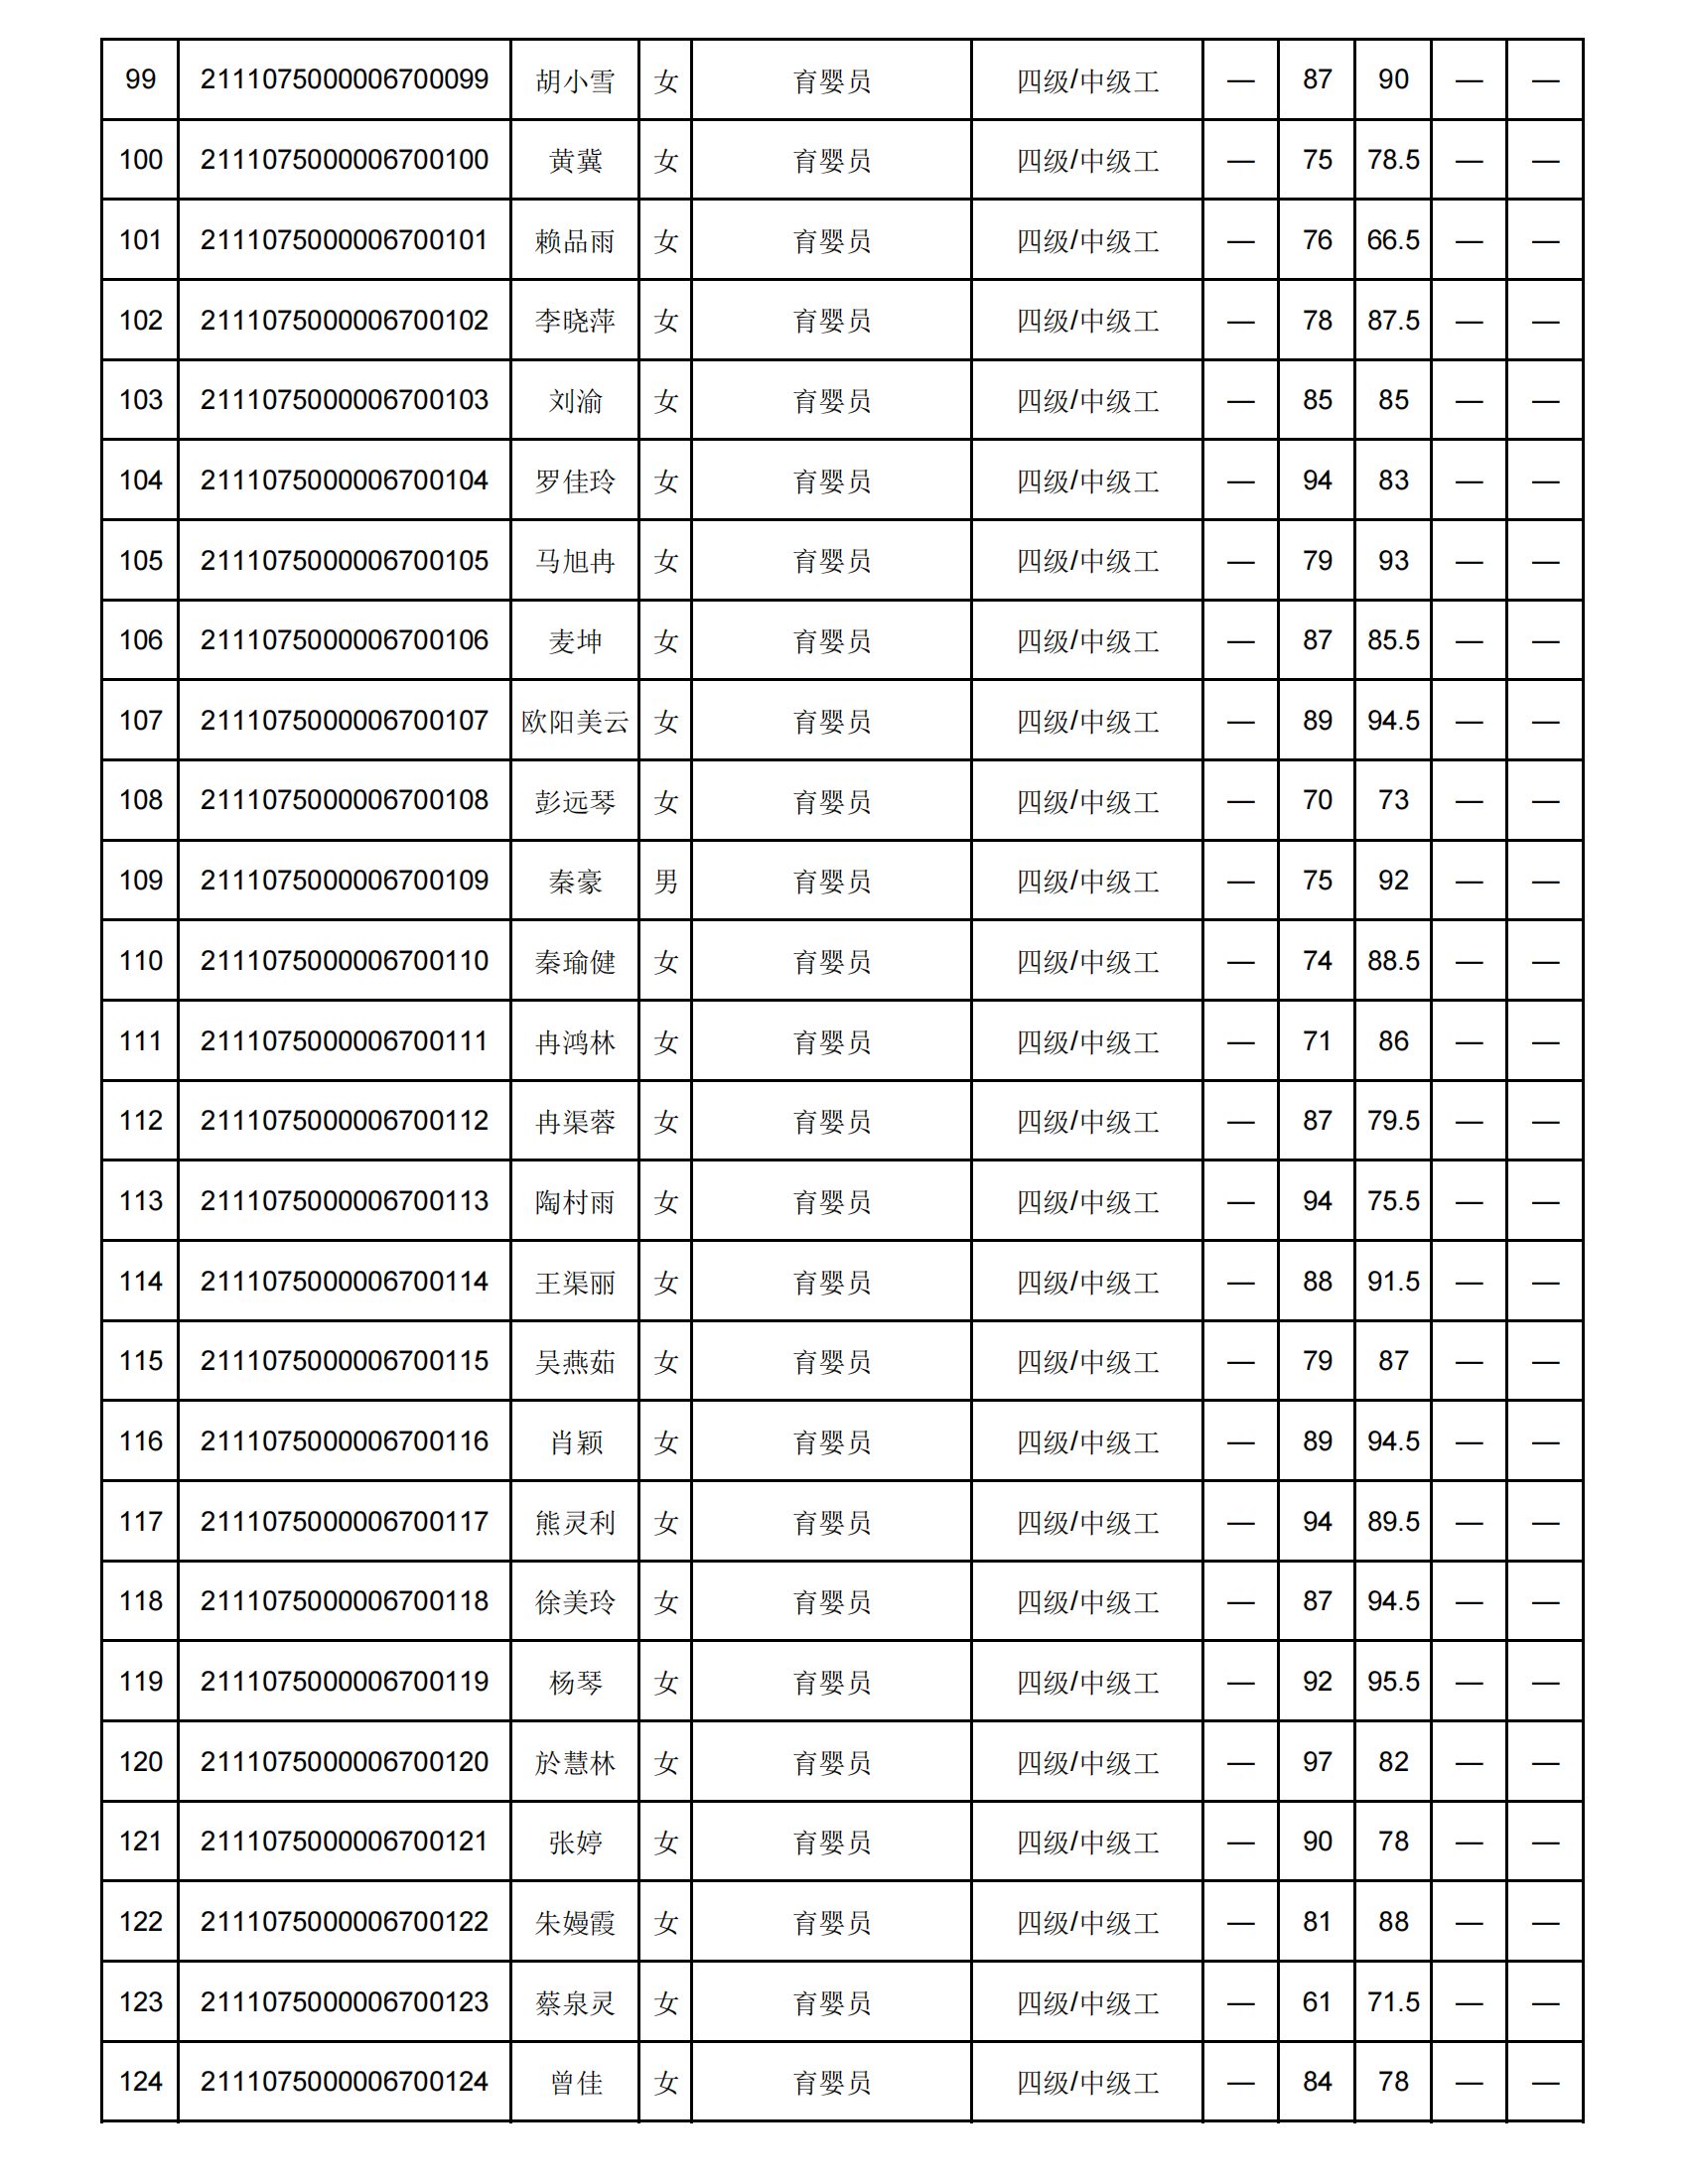 弘一职校第16批职业技能等级认定成绩花名册公示表(1)_04.png